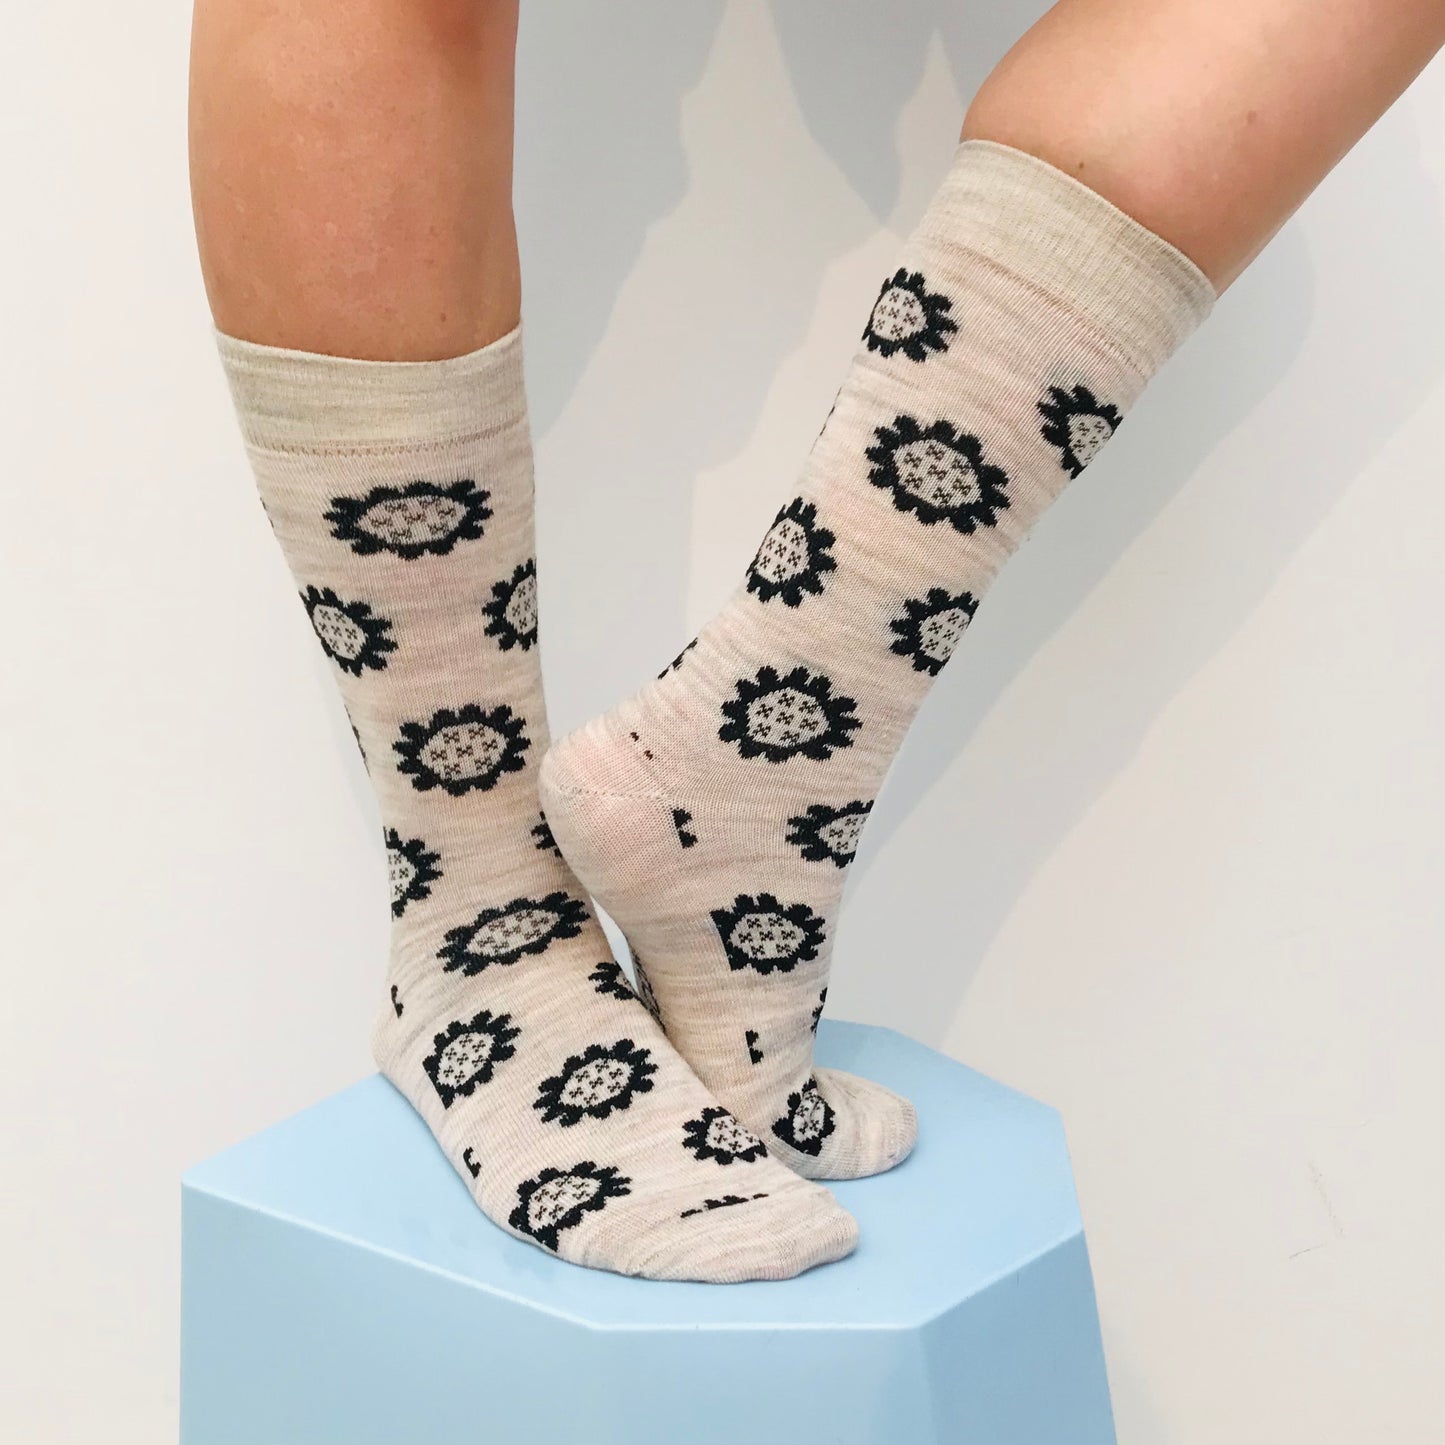 sly and company womens merino socks new zealand